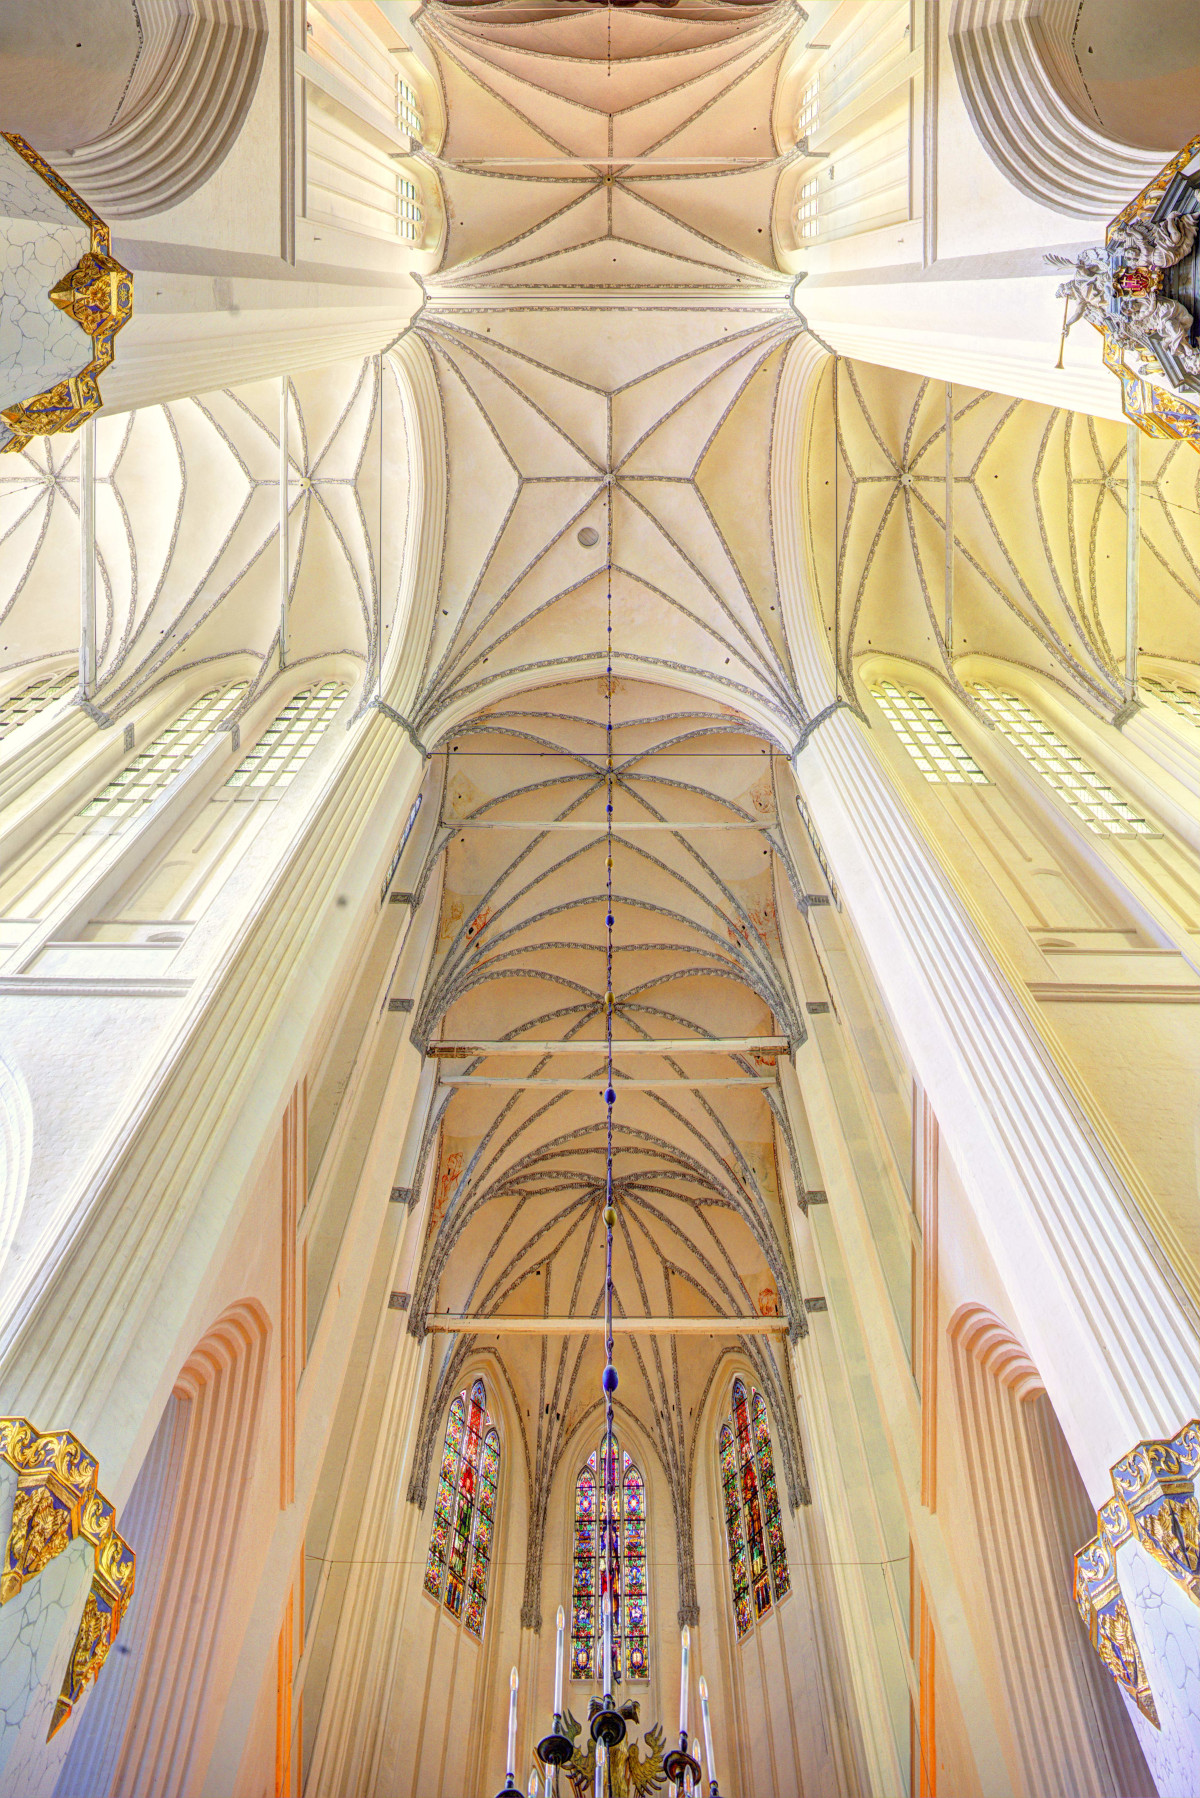 St.-Marien-Kirche, Blick in das Gewölbe, Chor und Querhaus